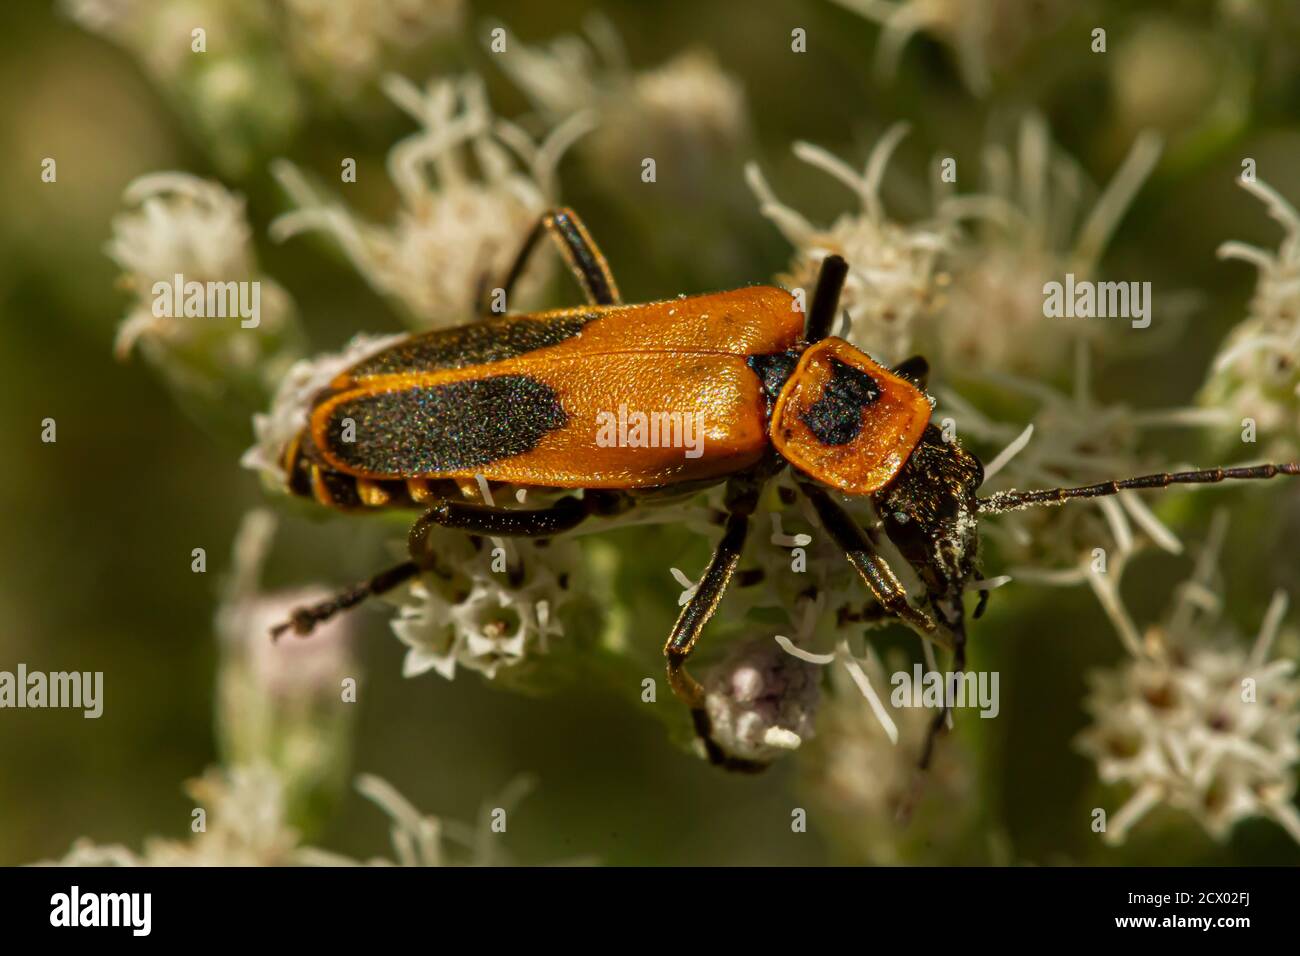 Primo piano immagine macro di un soldato adulto di oro betle a.k.a Pennsylvania leaterwing (Chauliognathus pensylvanicus). Il bug arancione è stato inaridito Foto Stock